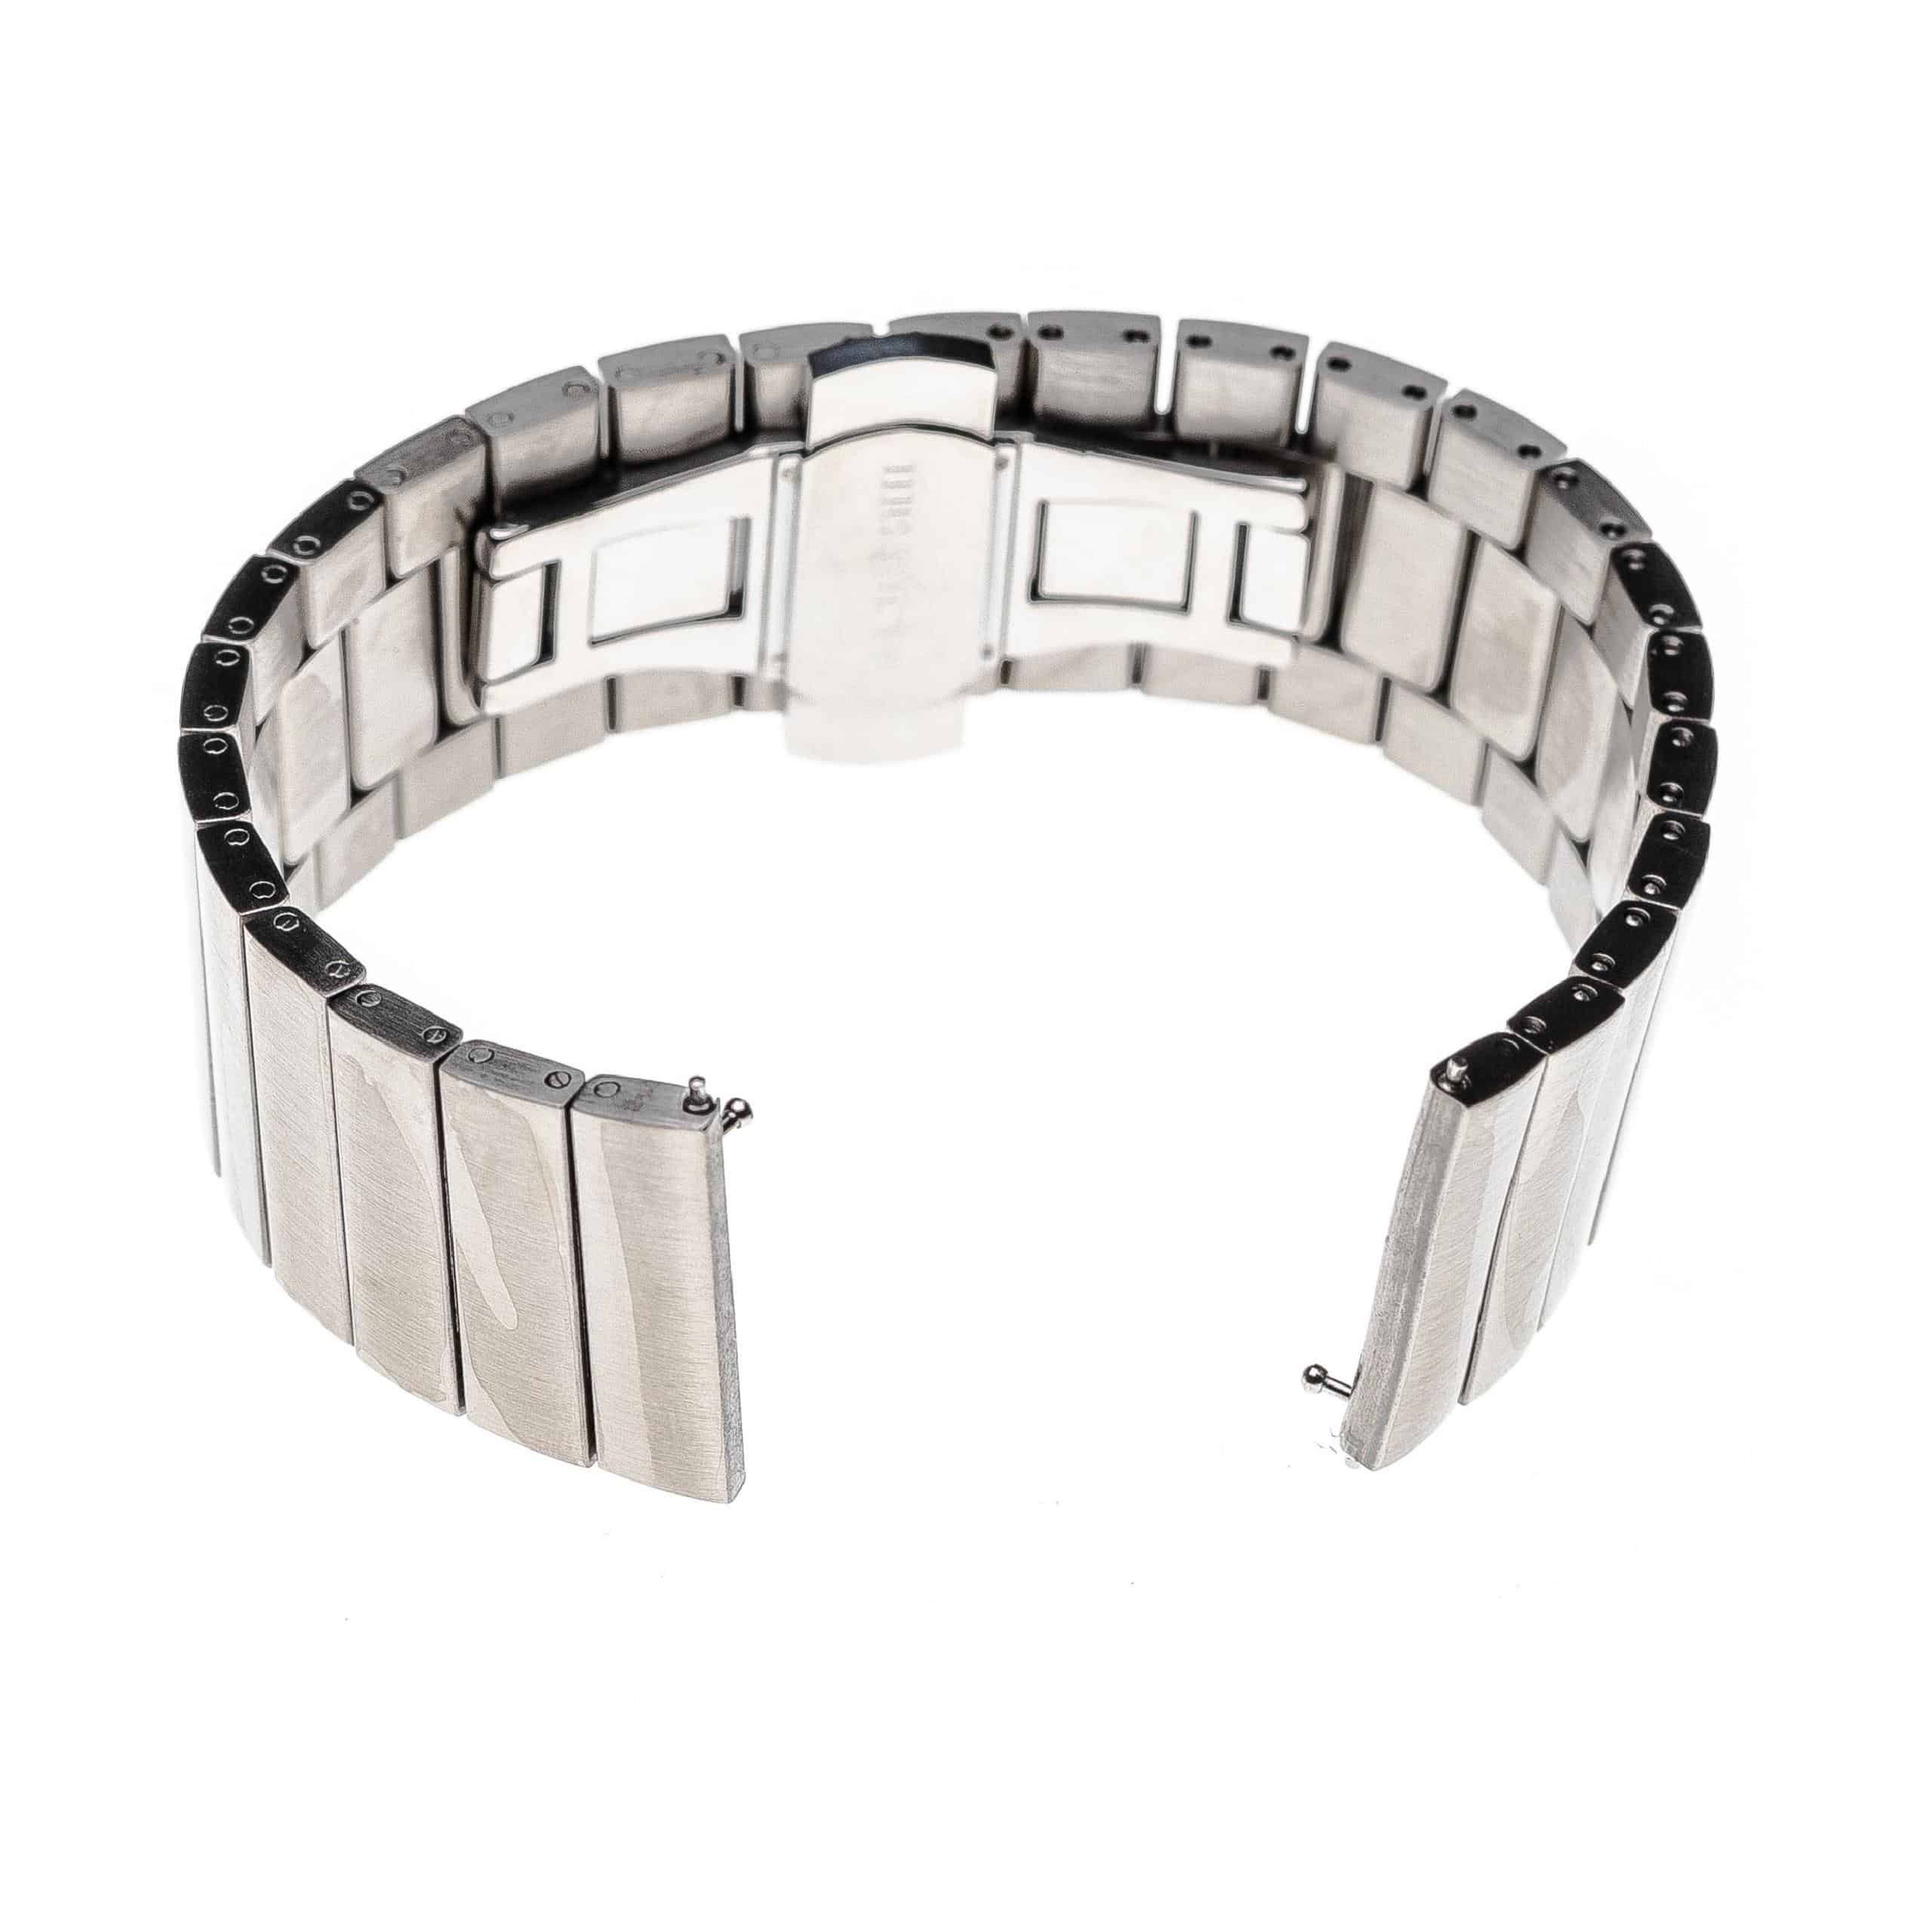 Bracelet pour montre intelligente Samsung Galaxy Watch - 17,4 cm de long, 20mm de large, acier inoxydable, arg